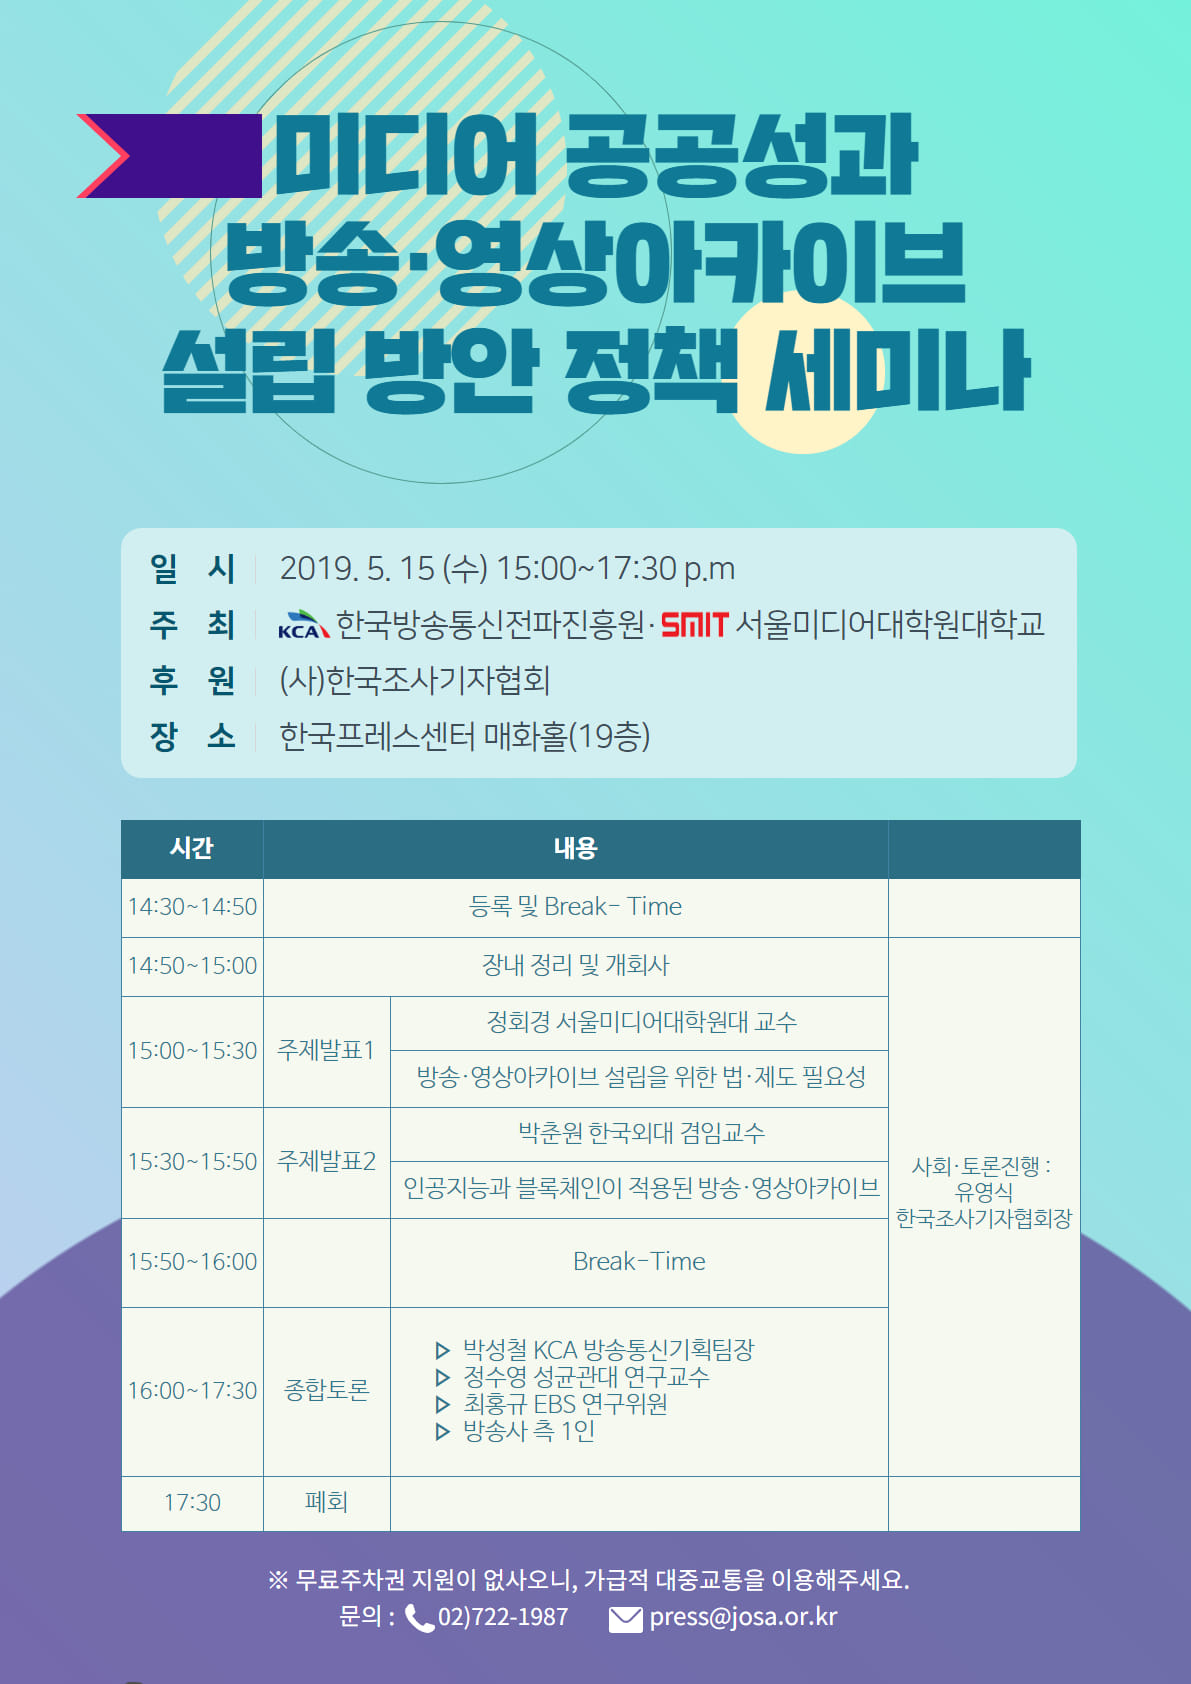 190430_KCA최종보고세미나 개최 알림 포스트_홍보용 포스터.jpg